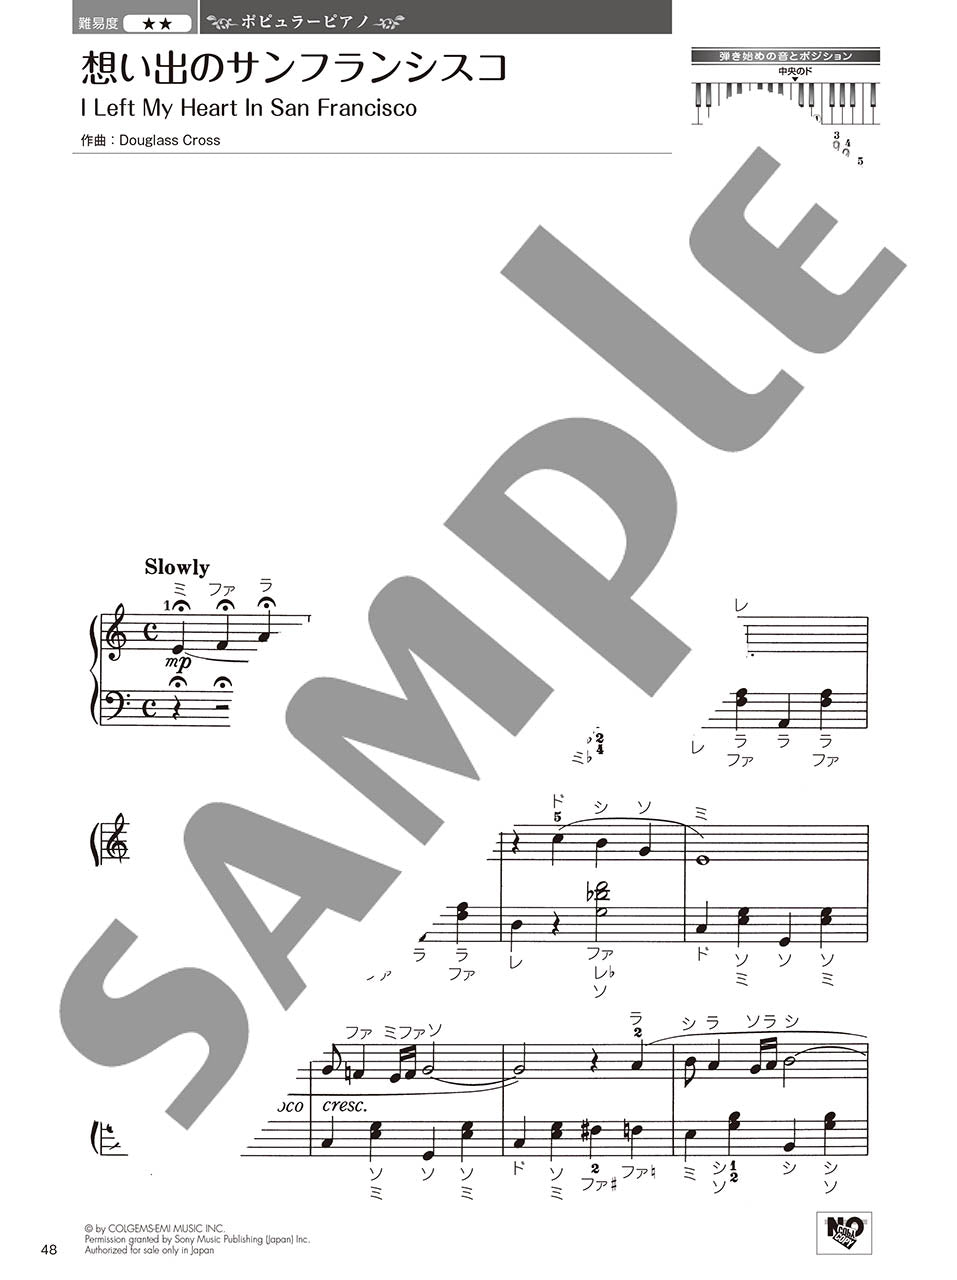 やさしく弾ける 大人のためのピアノレパートリー60 Vol.2_4